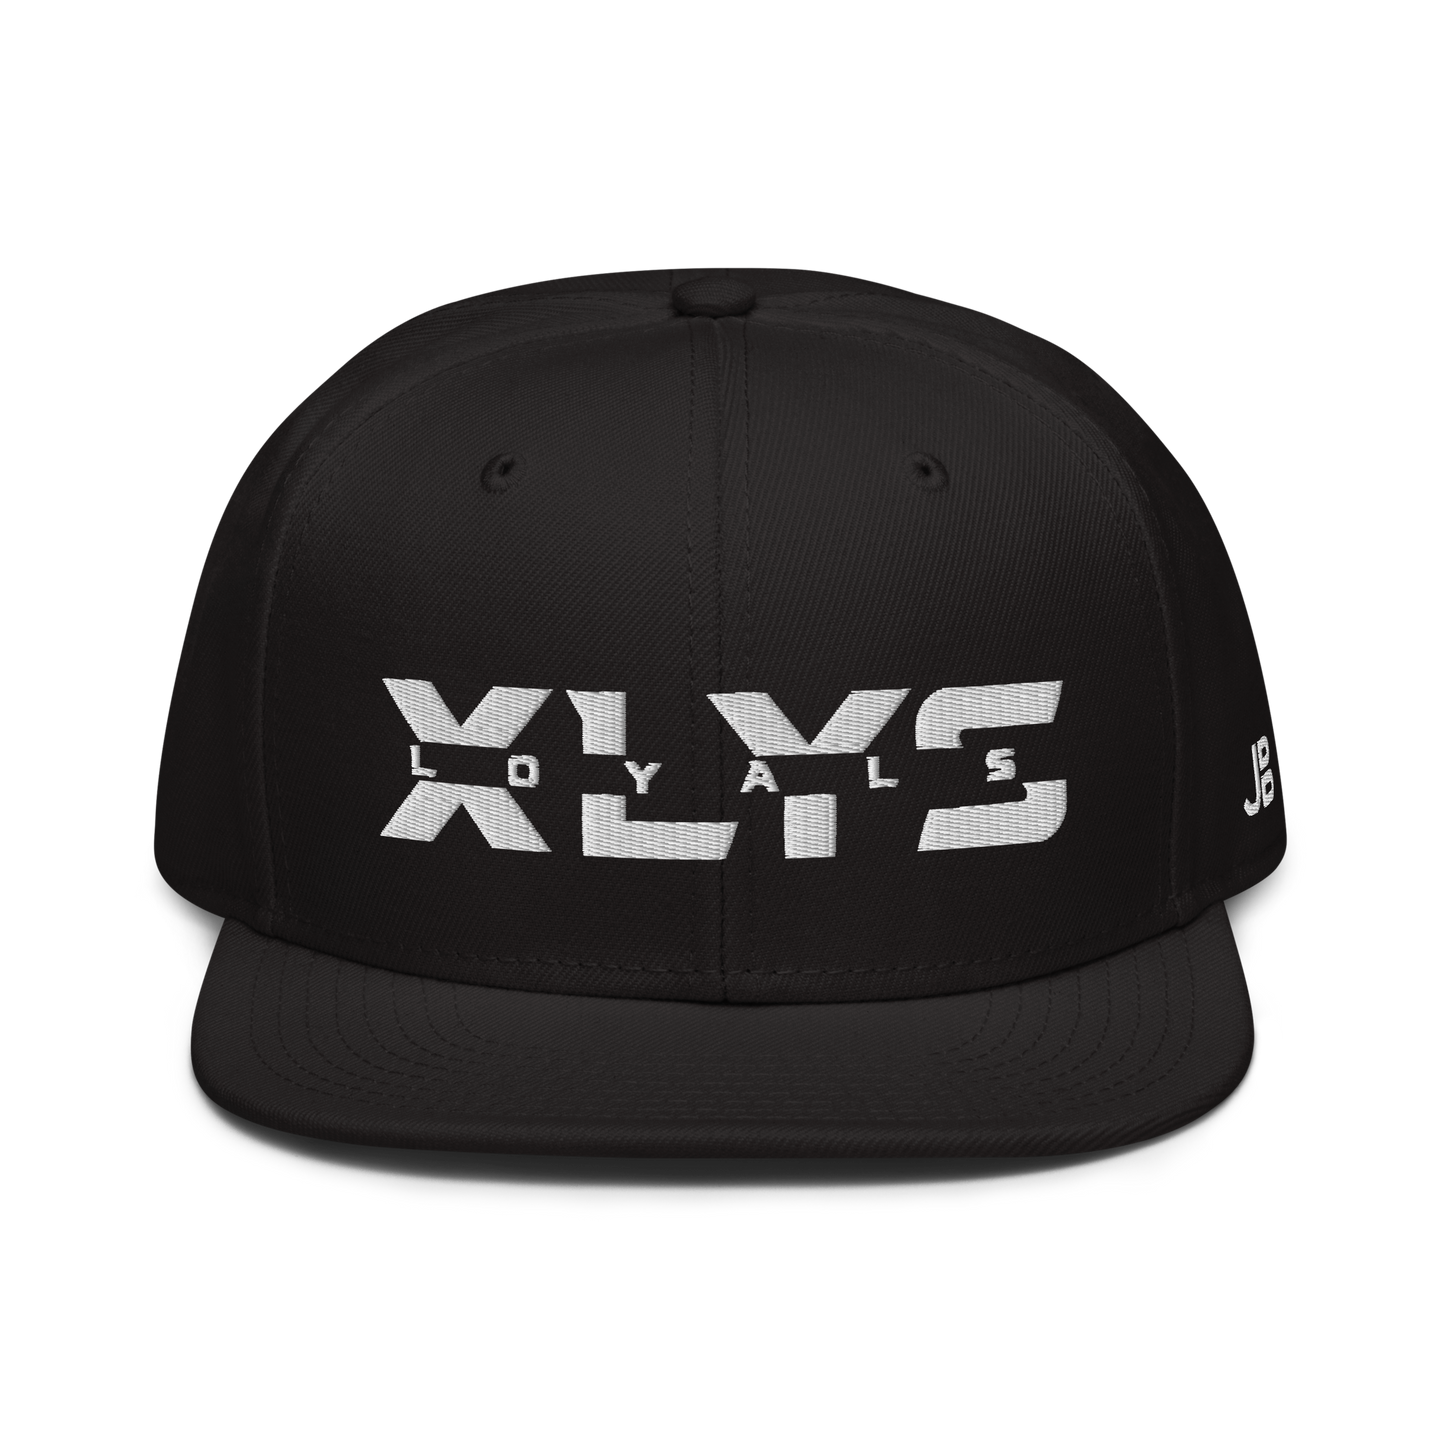 XLYS LOYALS - Snapback Cap